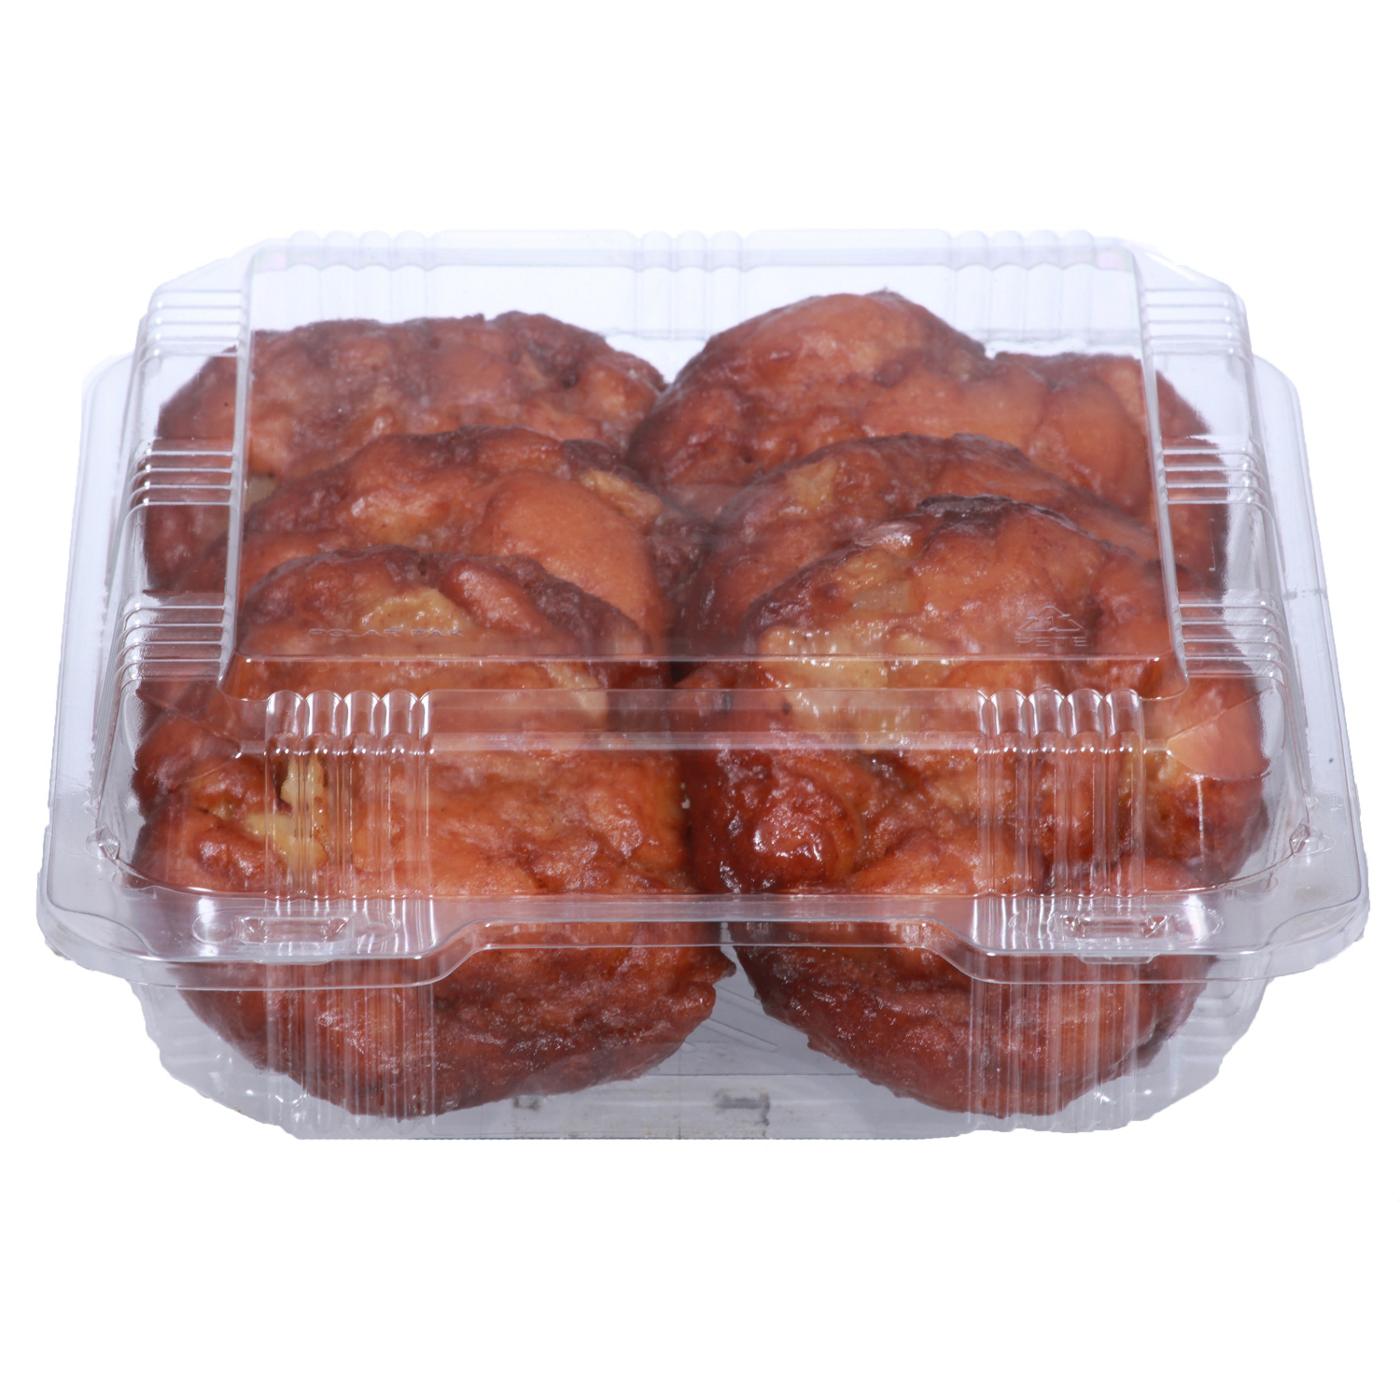 H-E-B Bakery Glazed Apple Fritter Donuts; image 2 of 2